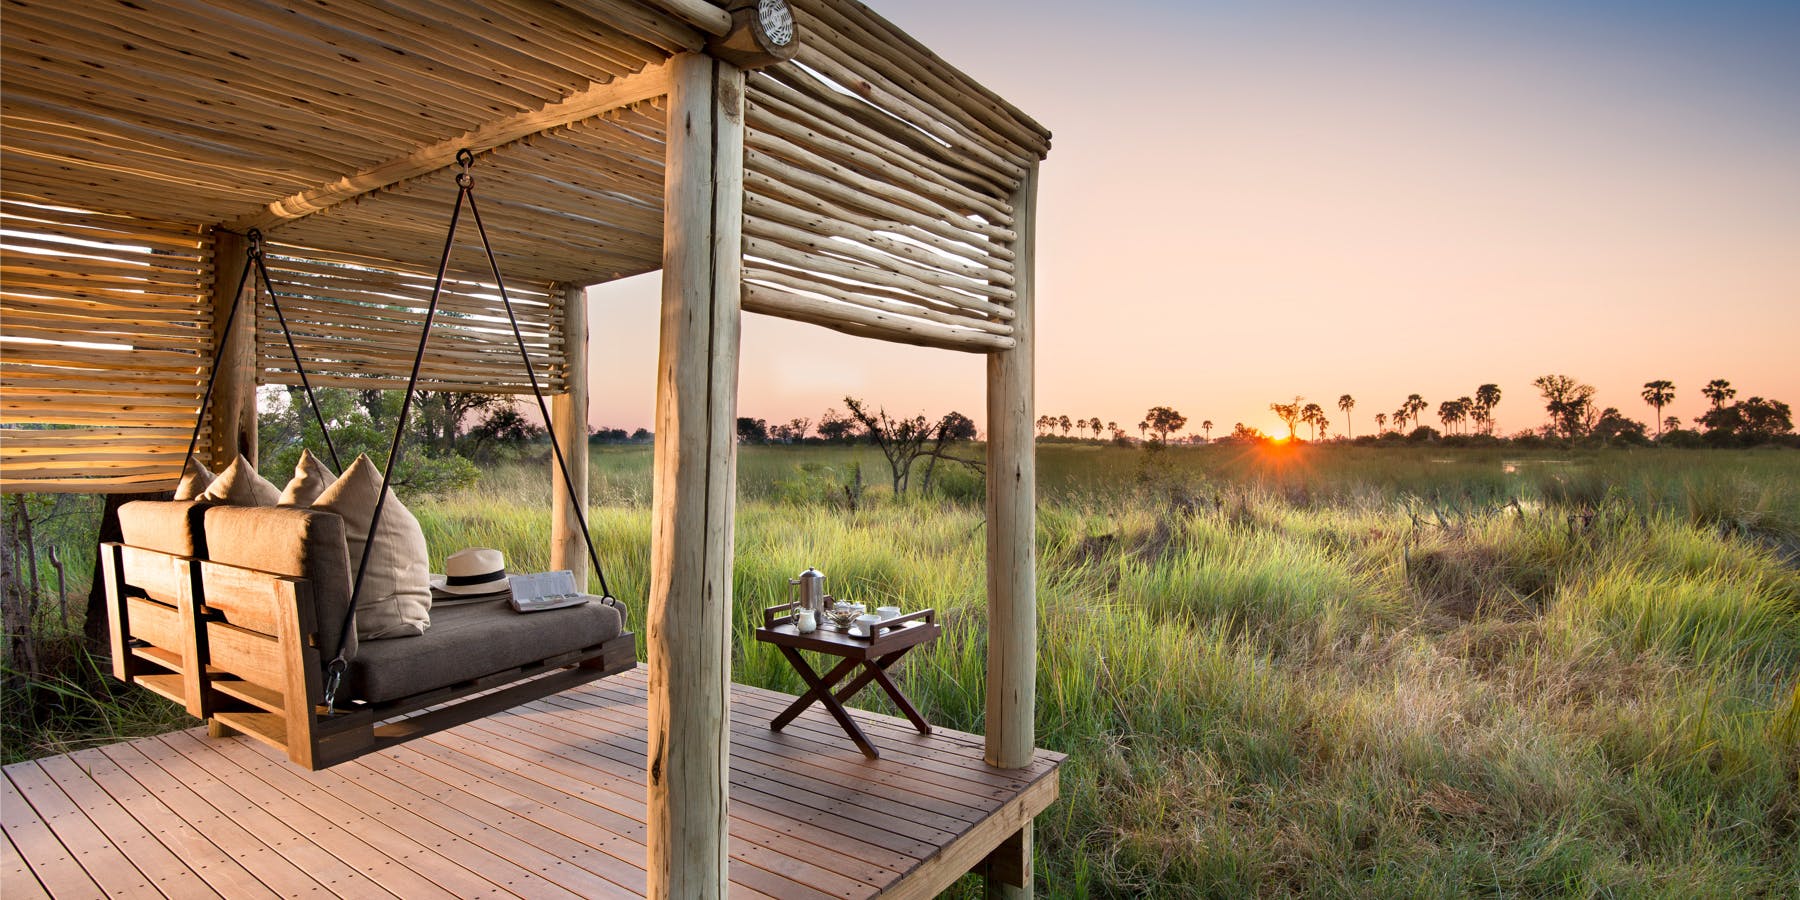 Botswana camp in the Okavango Delta